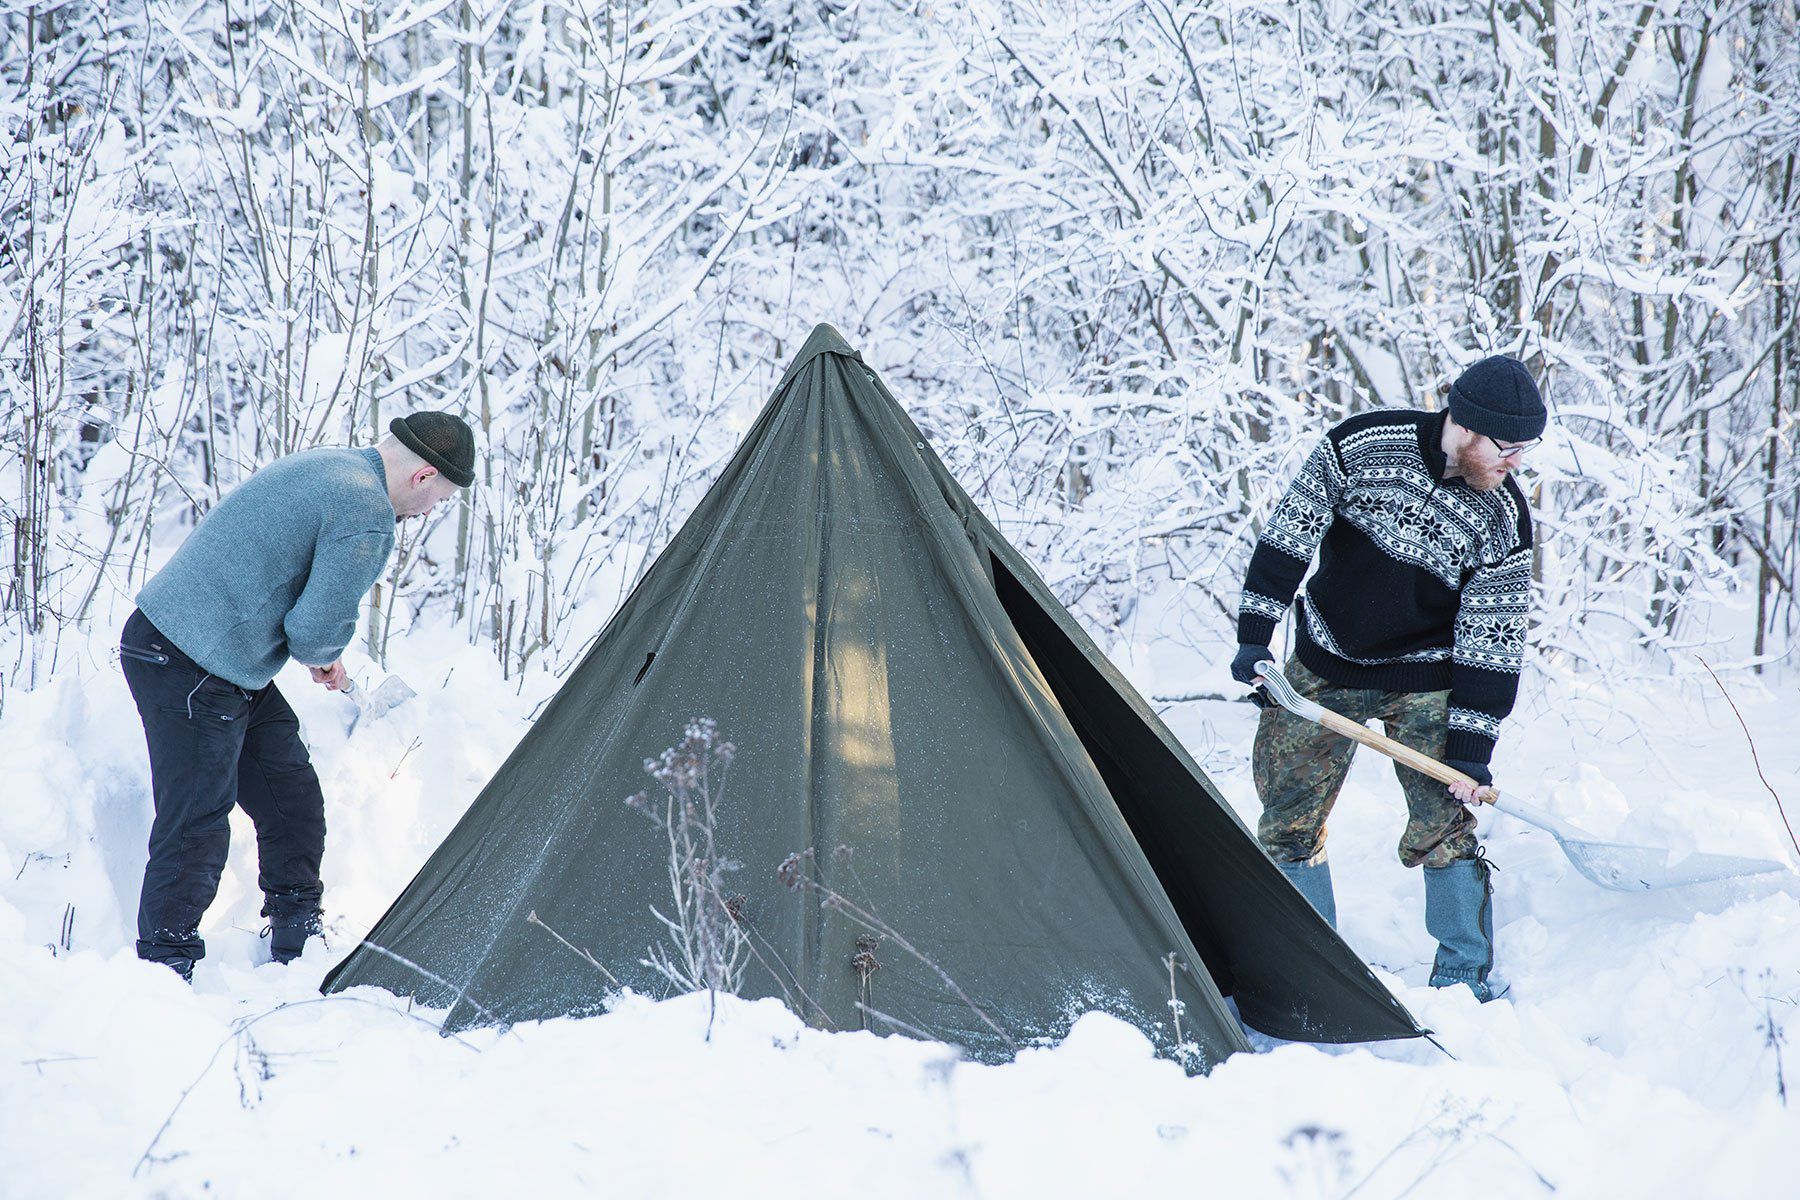 Teltta pystytettynä lumeen lumisen metsän reunaan. Kaksi miestä lapioi lunta teltan ympäriltä.